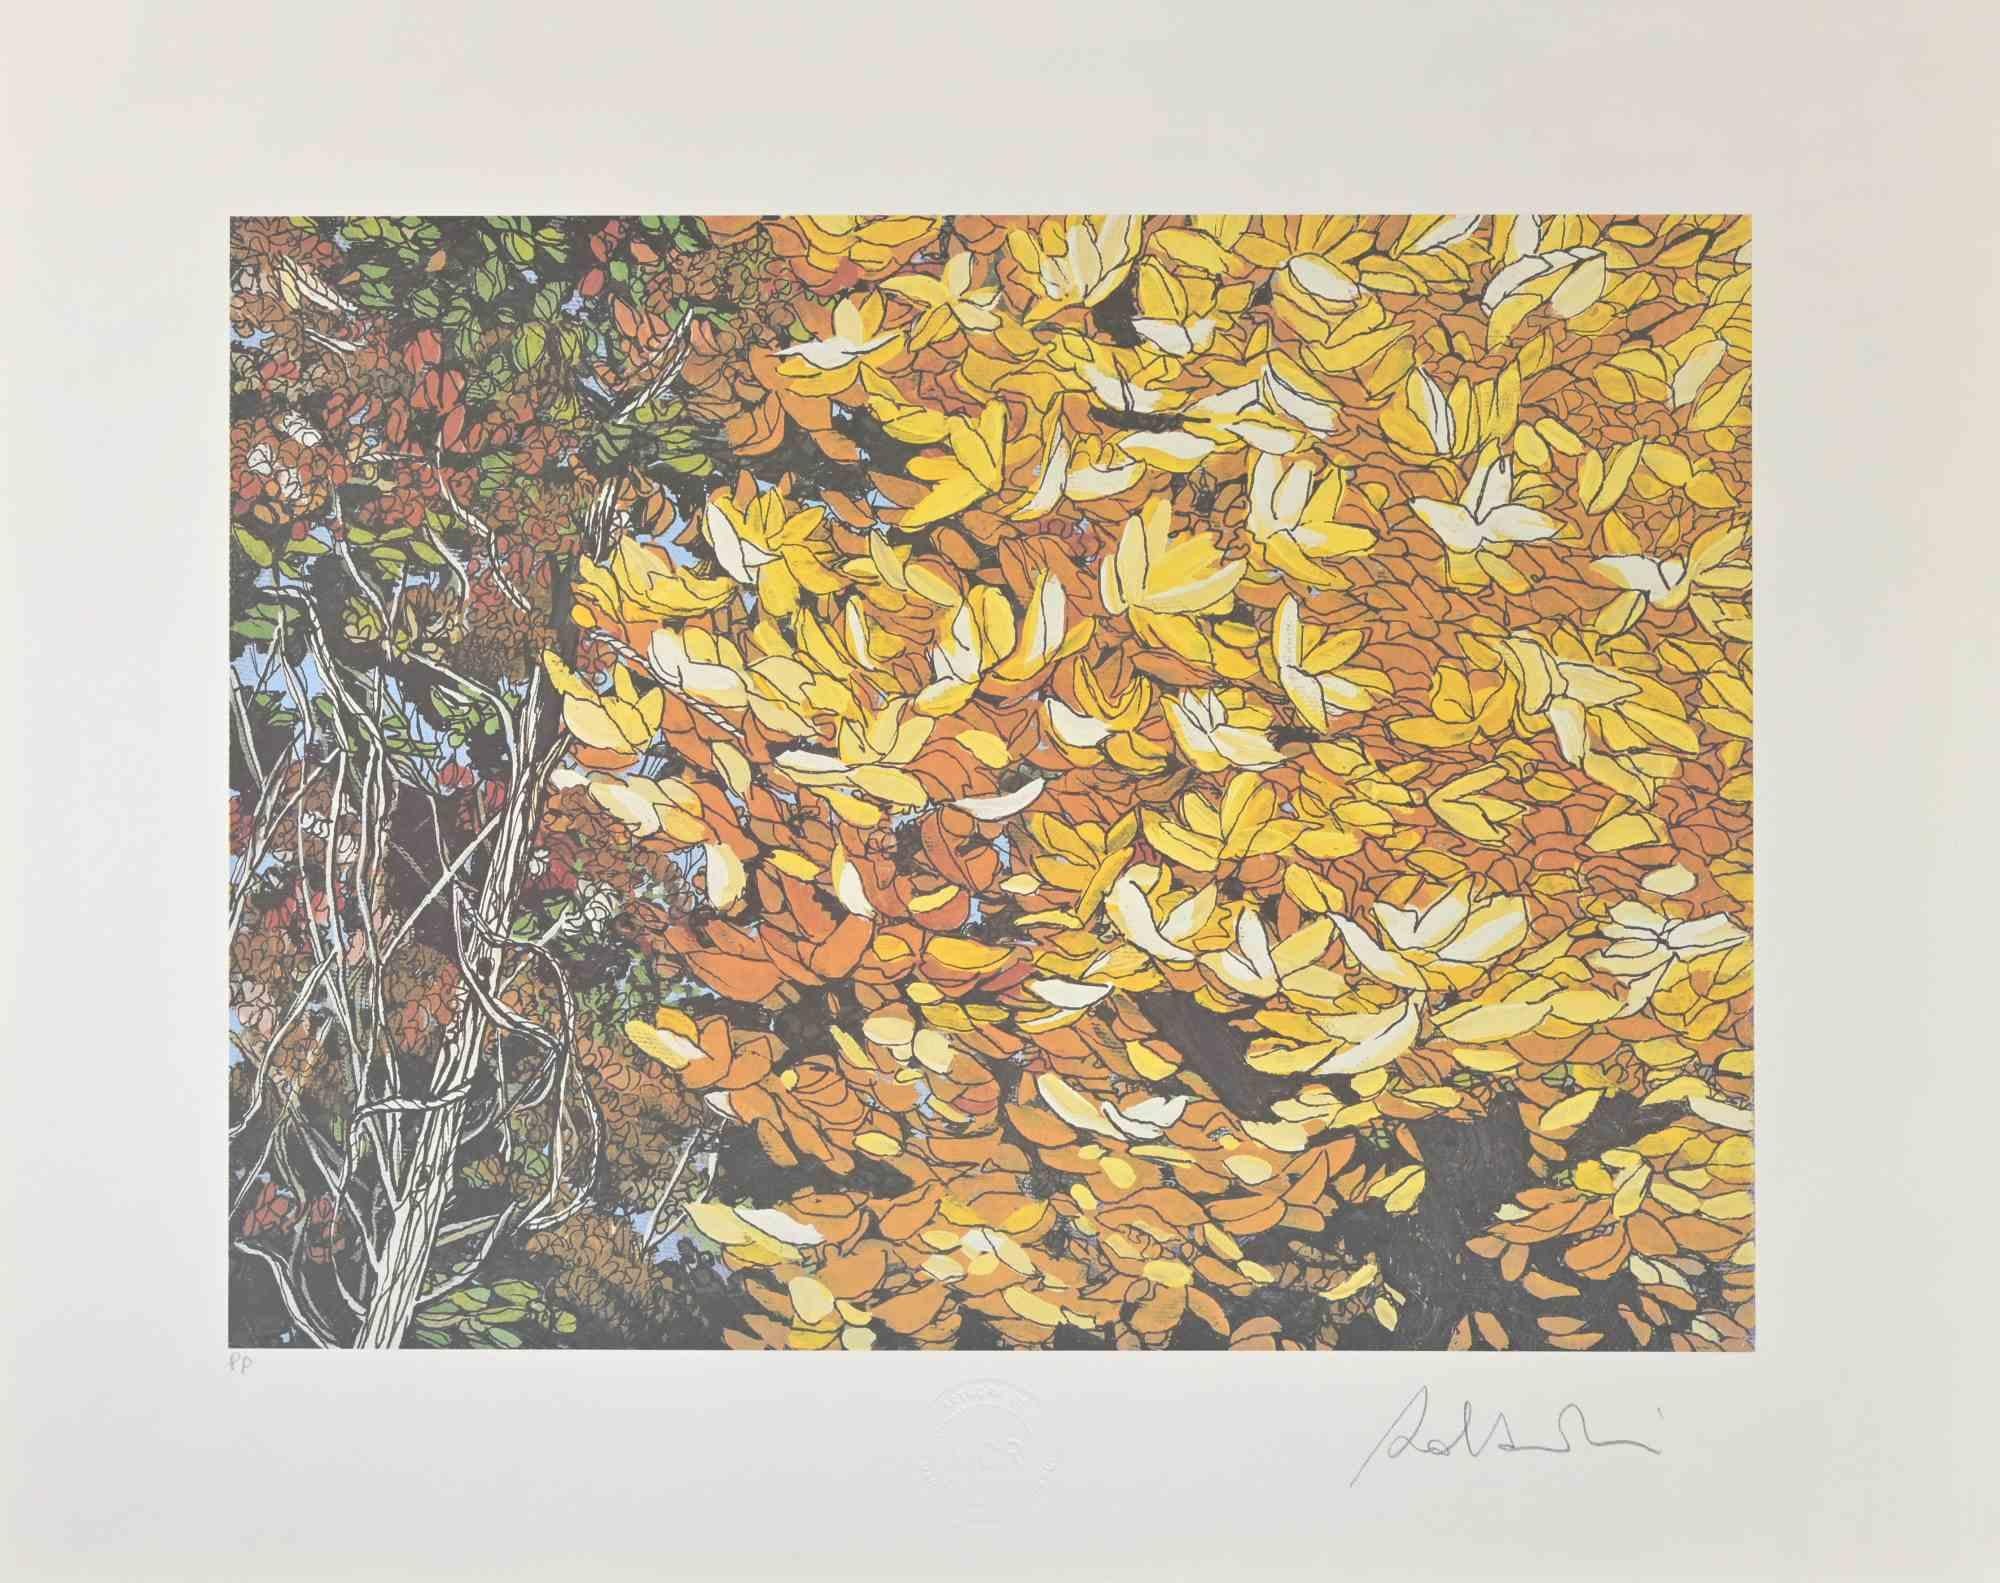 Rolandi (Maurizio Coccia) Landscape Print - Landscapes Of Autumn - Screen Print by Rolandi - 1980s